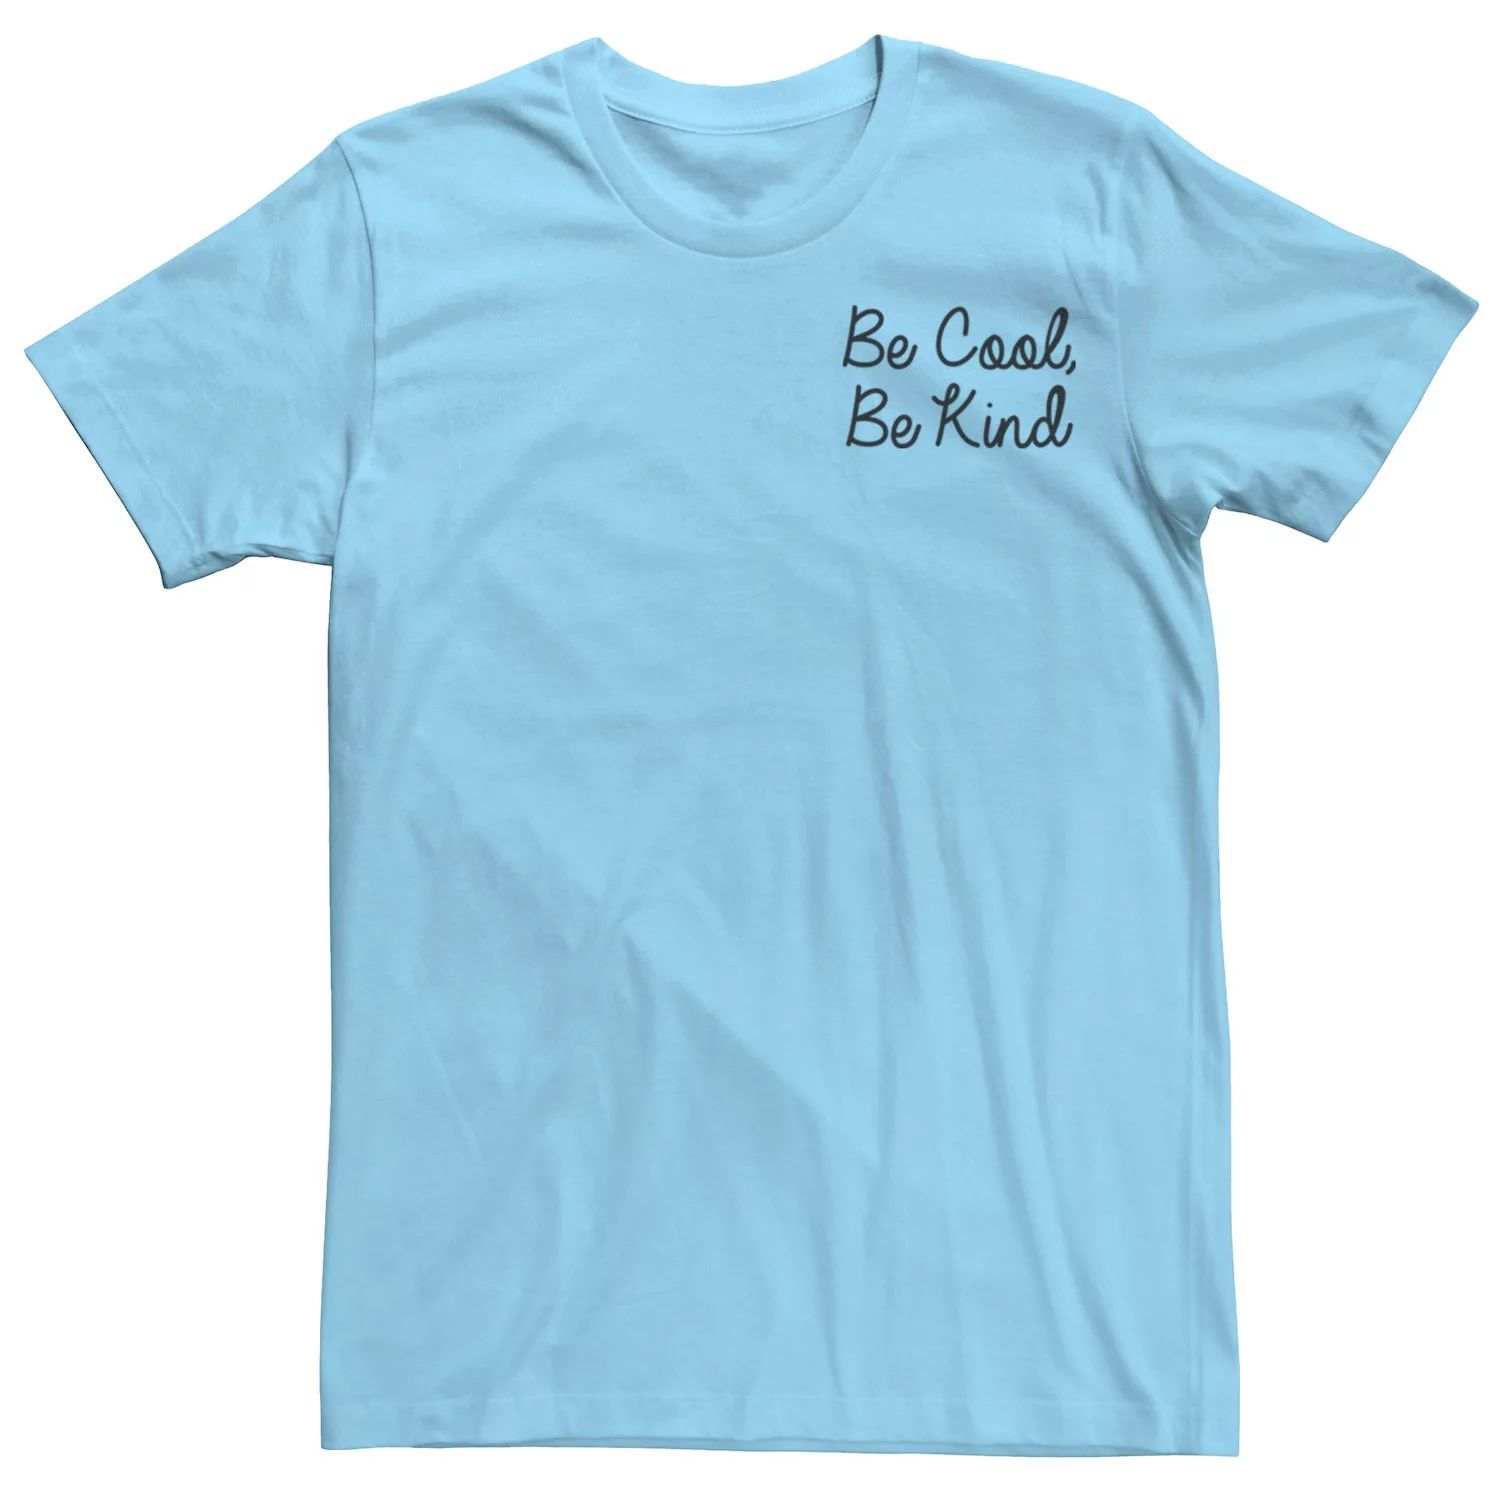 Мужская футболка Fifth Sun Be Cool Be Kind с надписью Licensed Character мужская футболка be kind s темно синий